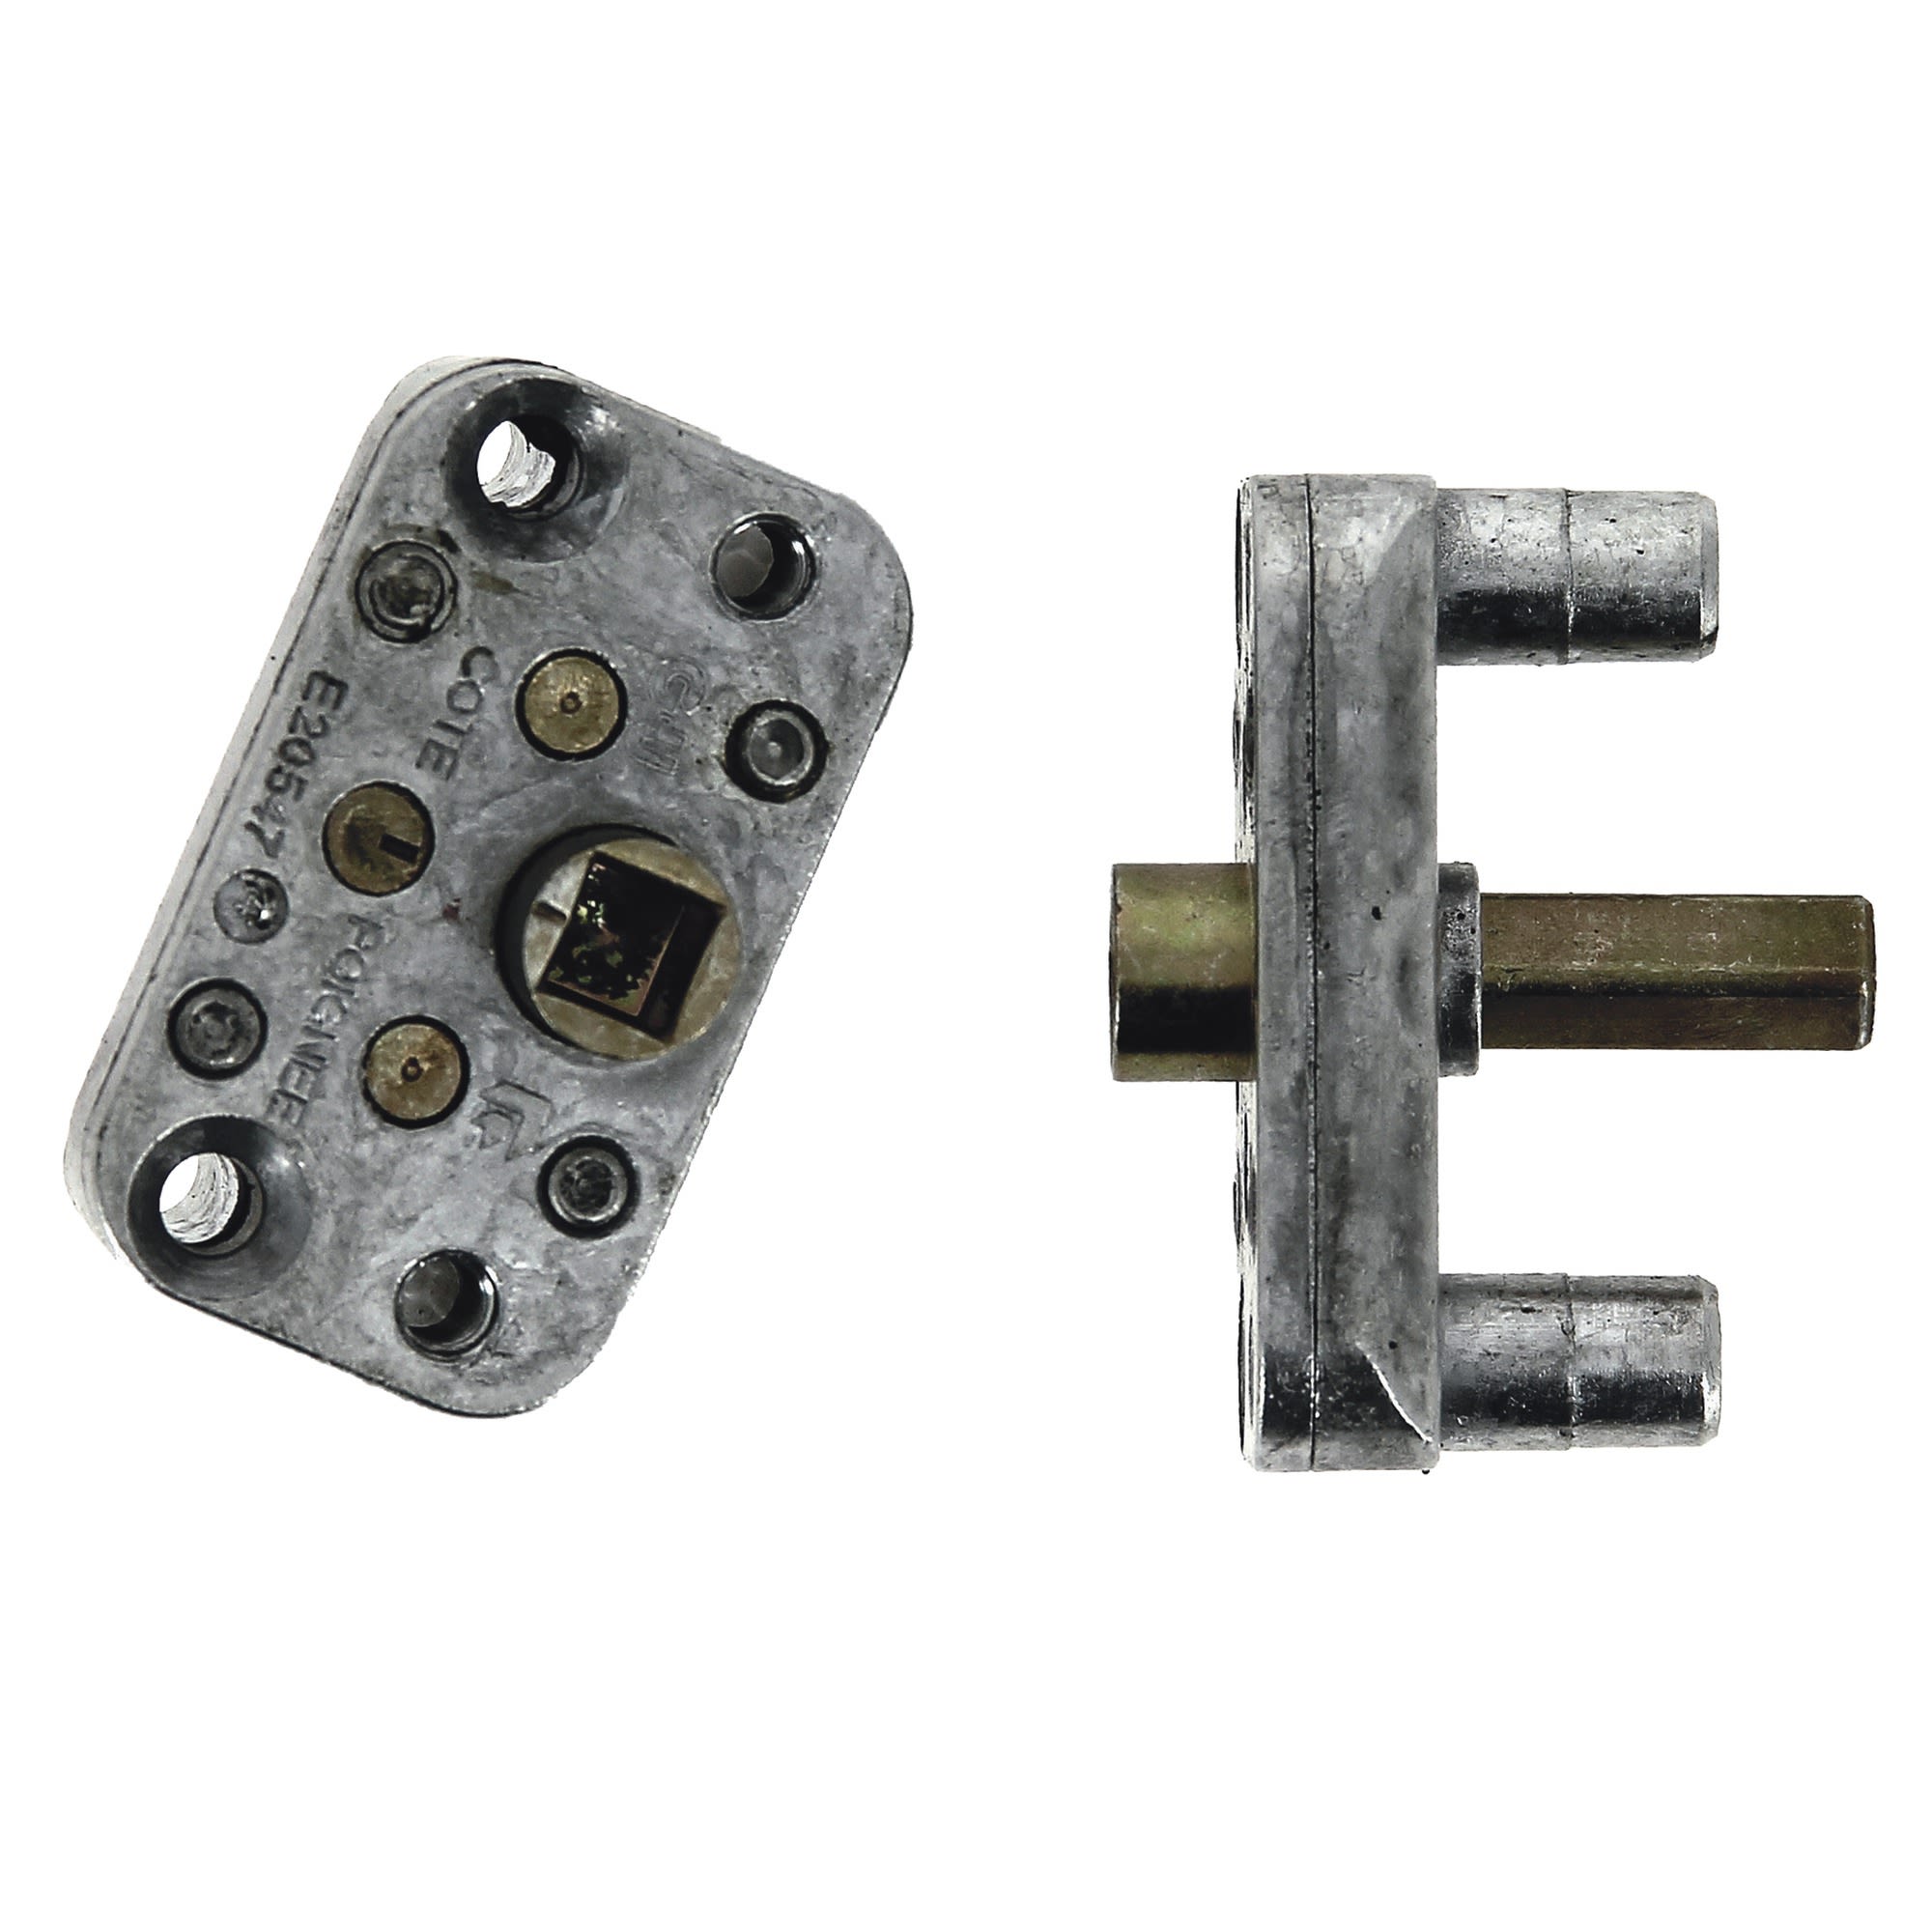 Escalux - Echafaudage Echelle Aluminium 6 fonctions en 1 C: 150 Kg -  HEXALUX 90